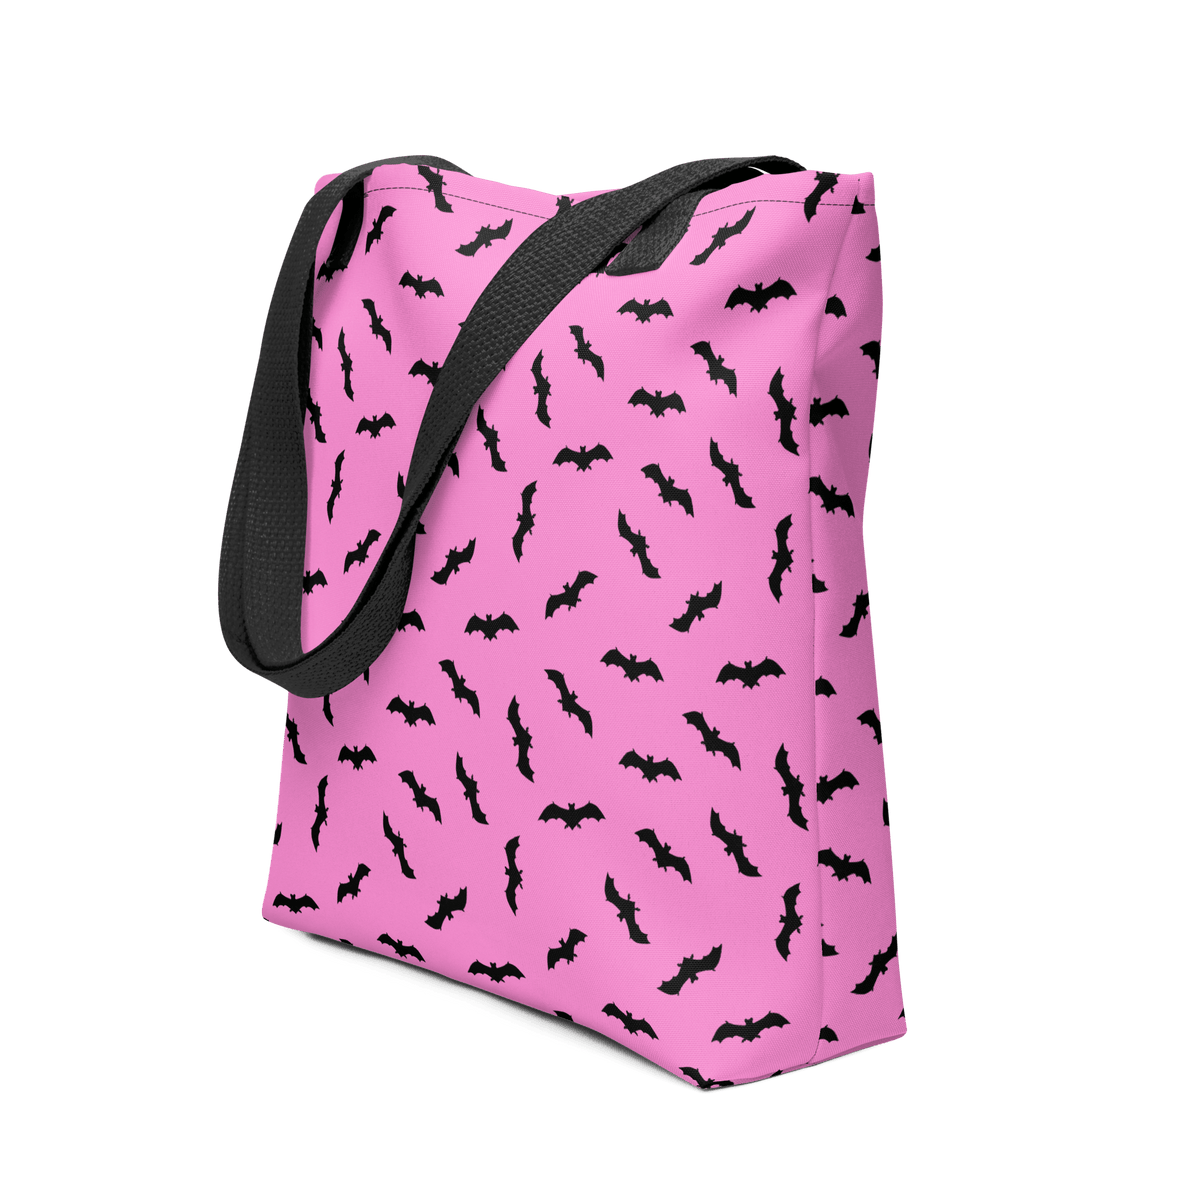 Bat Babe Tote Bag - Goth Cloth Co.6632298_4533